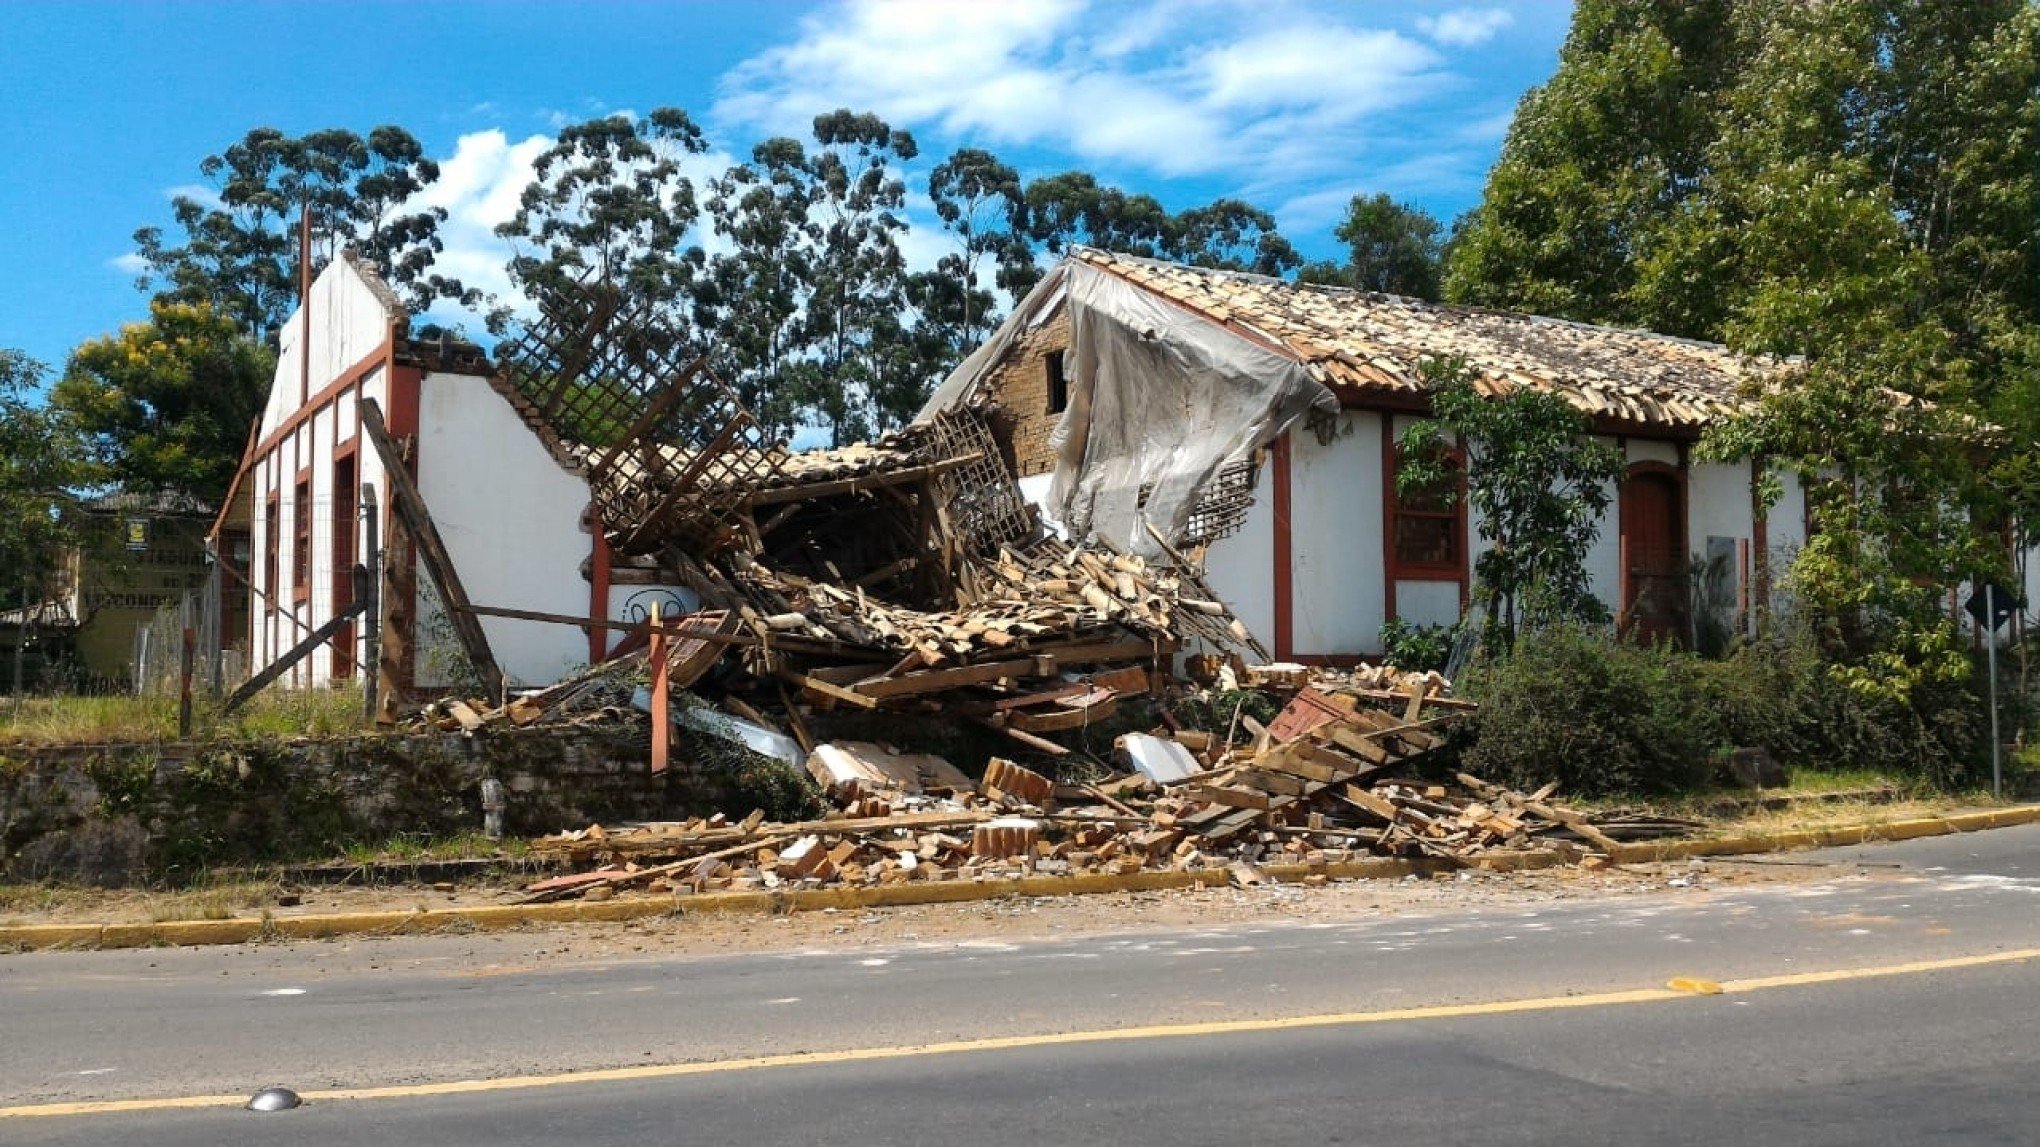 Restauro da Casa do Imigrante segue no papel 4 anos após colapso estrutural